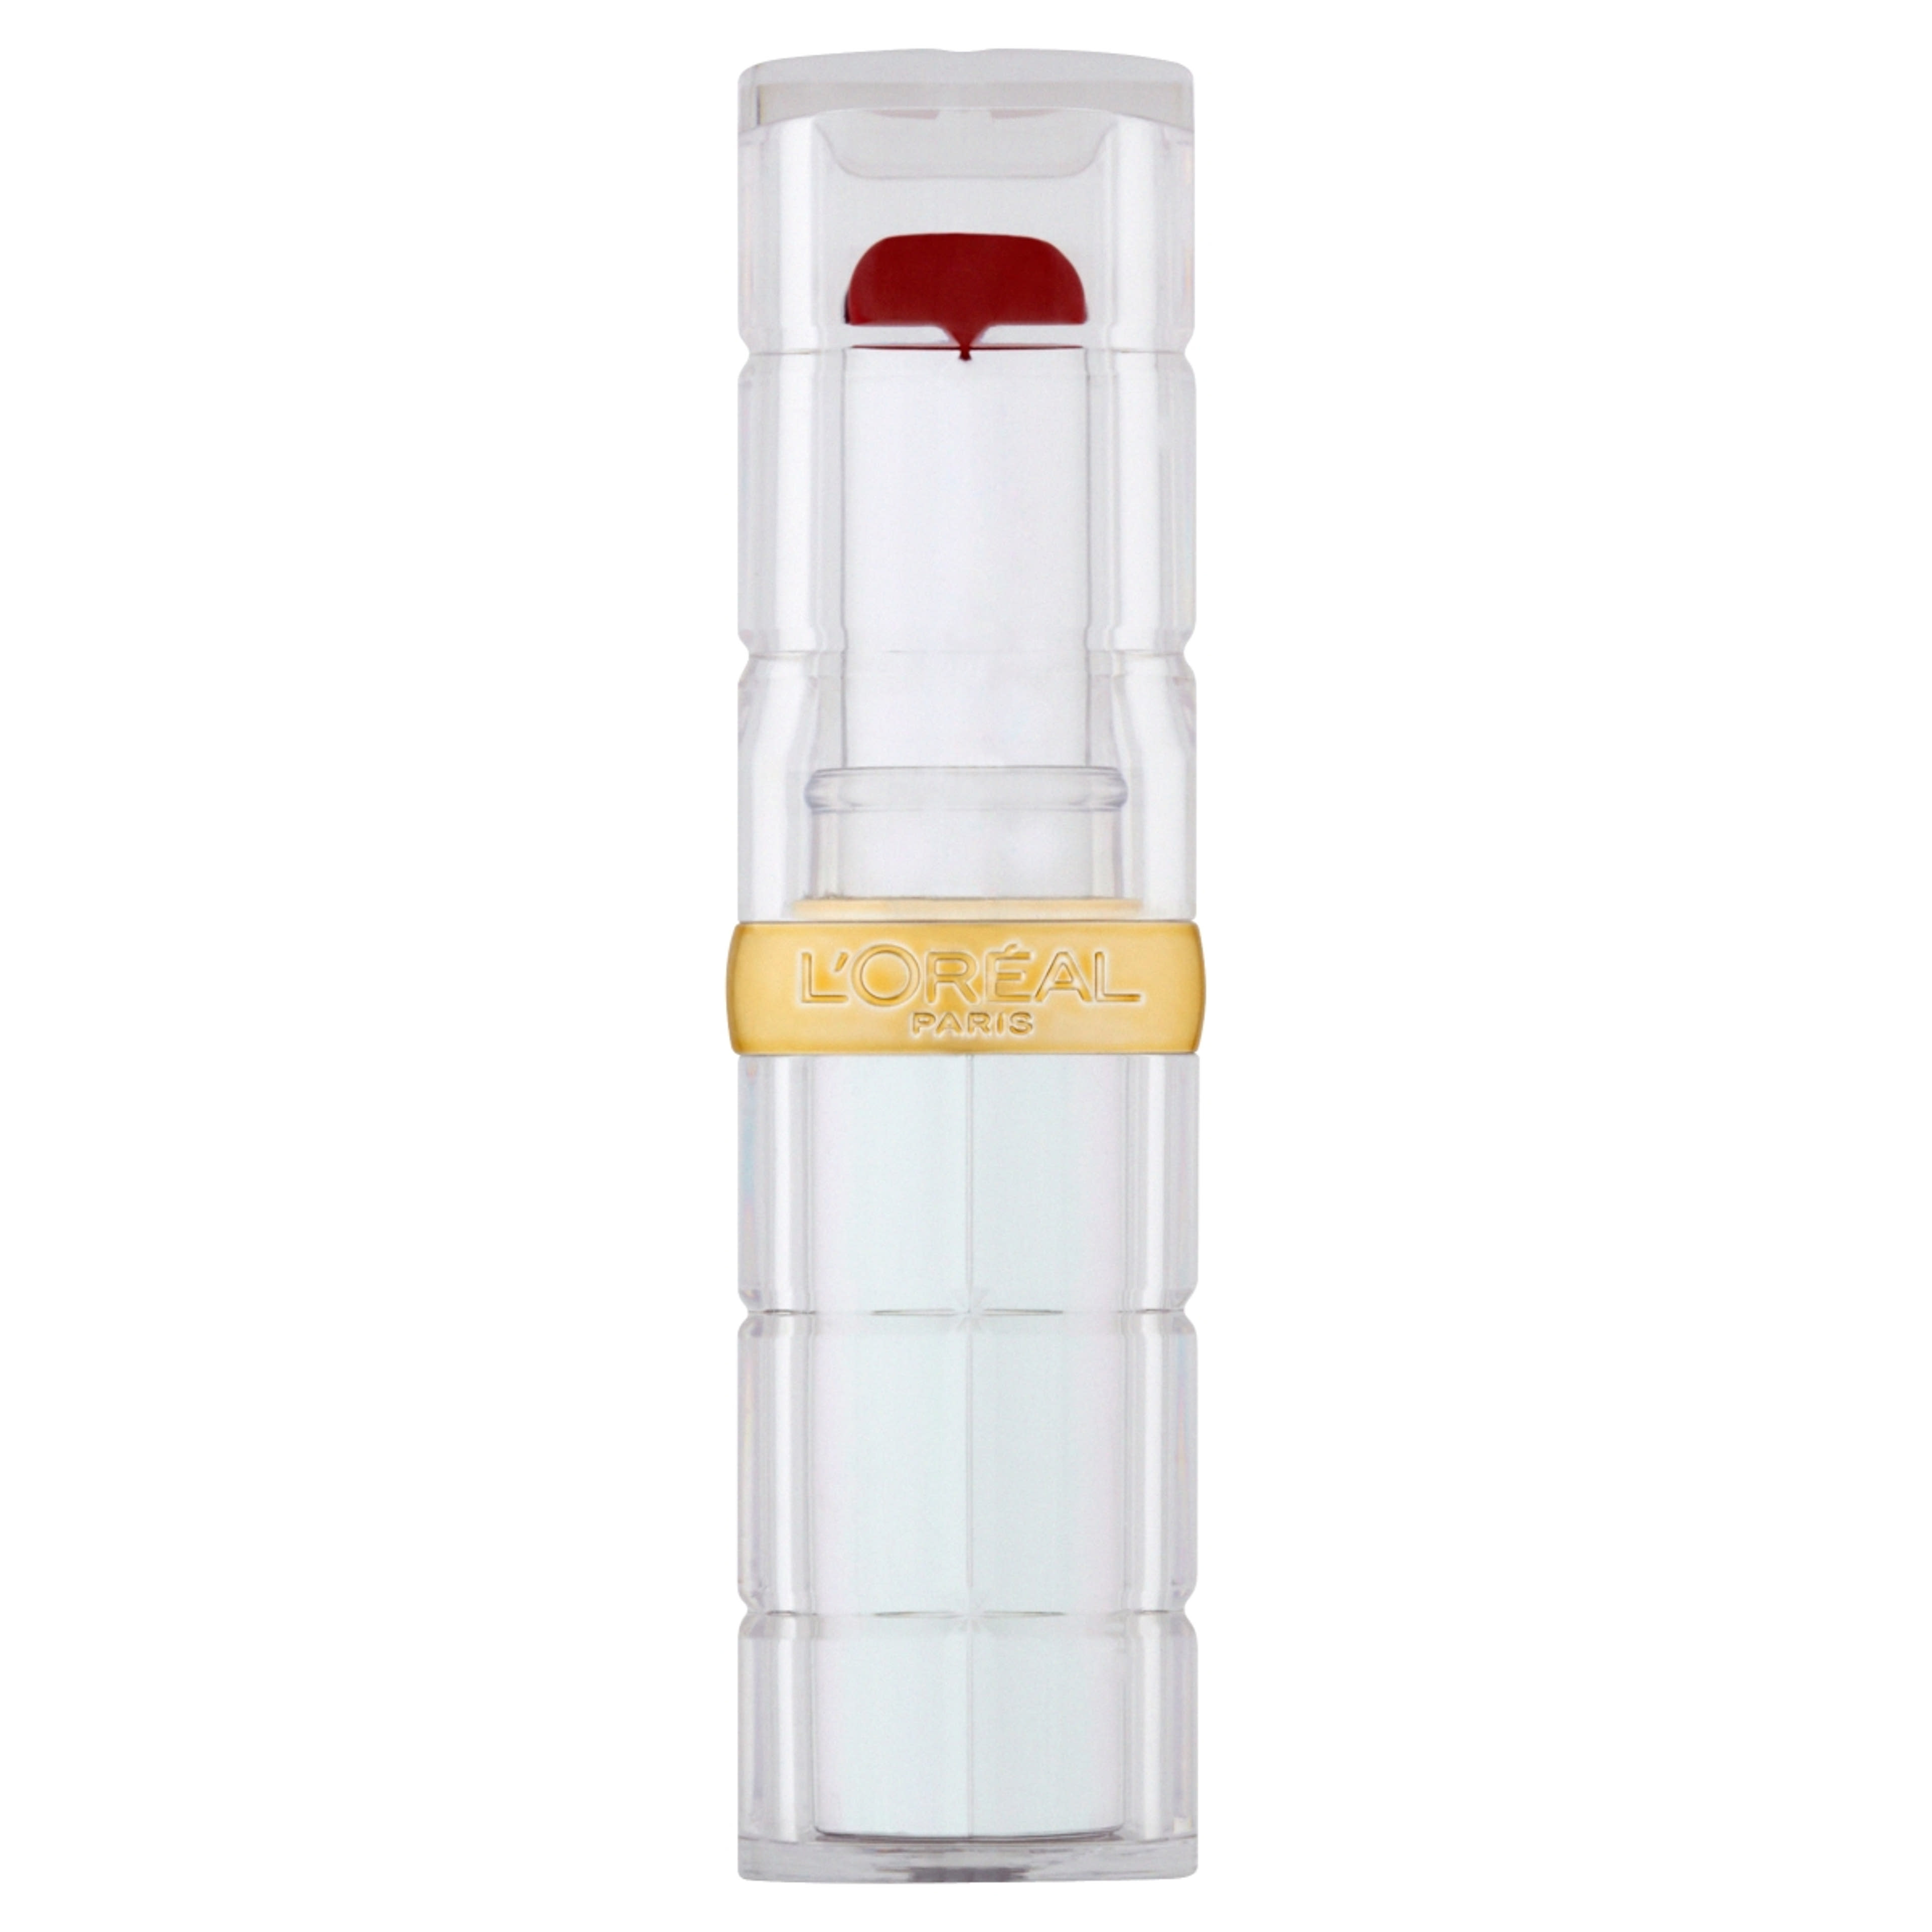 L'Oréal Paris Color Riche Shine hidratáló ajakrúzs, 350 INSANESATION rúzs - 1 db